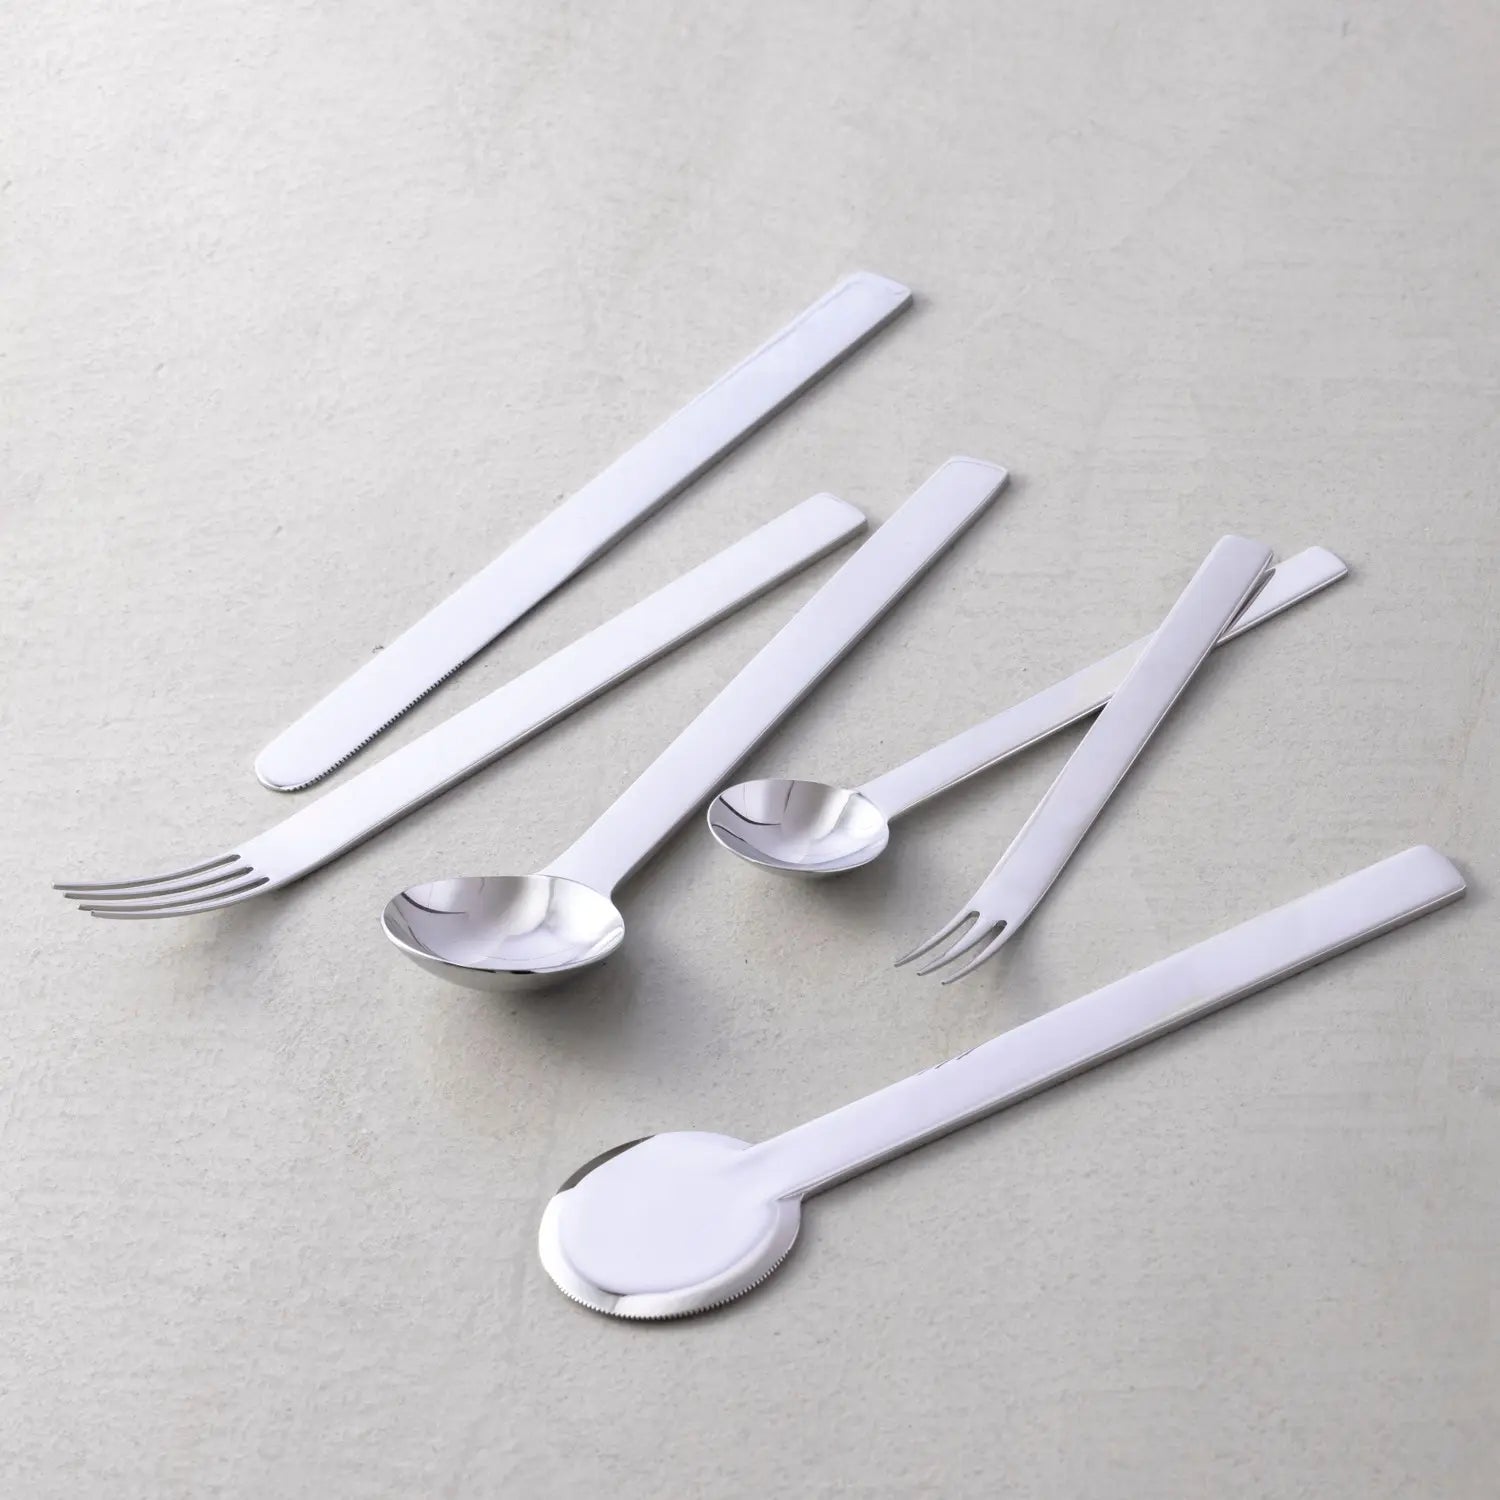 Tsubame Shinko TI-1 Stainless Steel Teaspoon 15cm Loose Cutlery